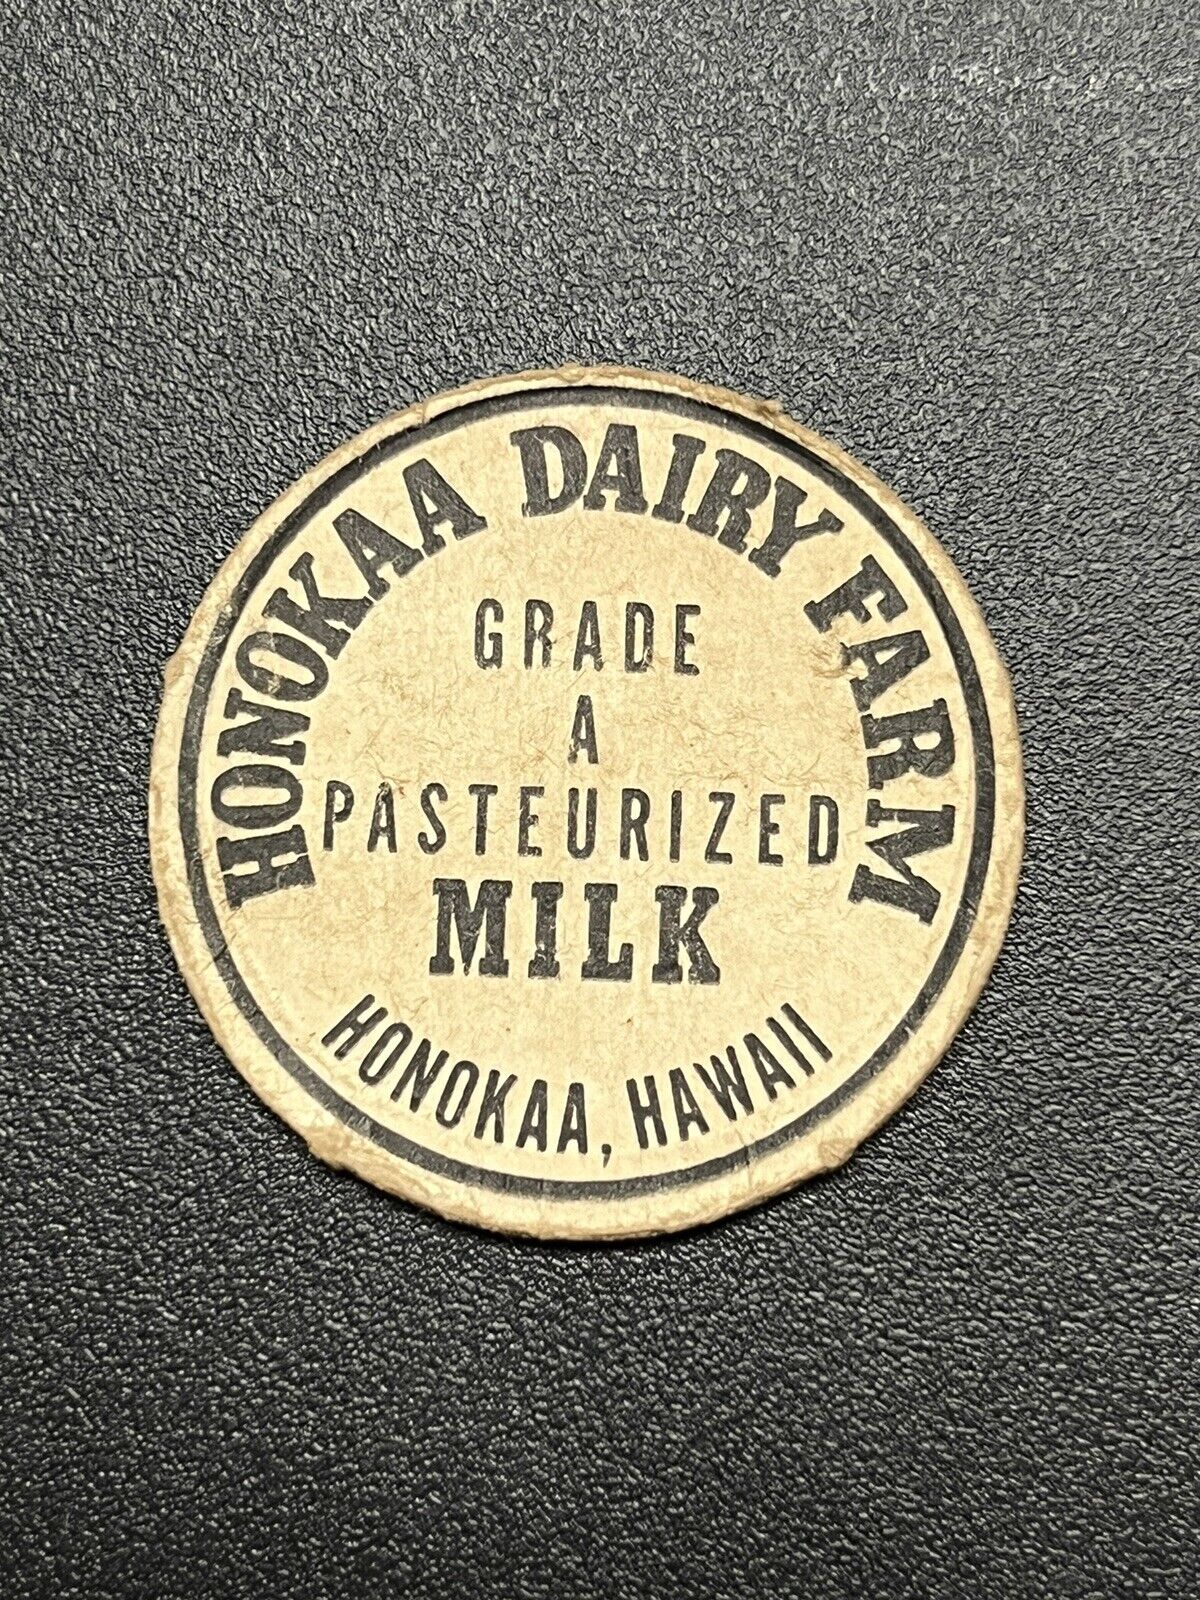 Hawaii Milk Cap - Honokaa Dairy Farm Grade A Pasteurized Milk Honokaa Hawaii